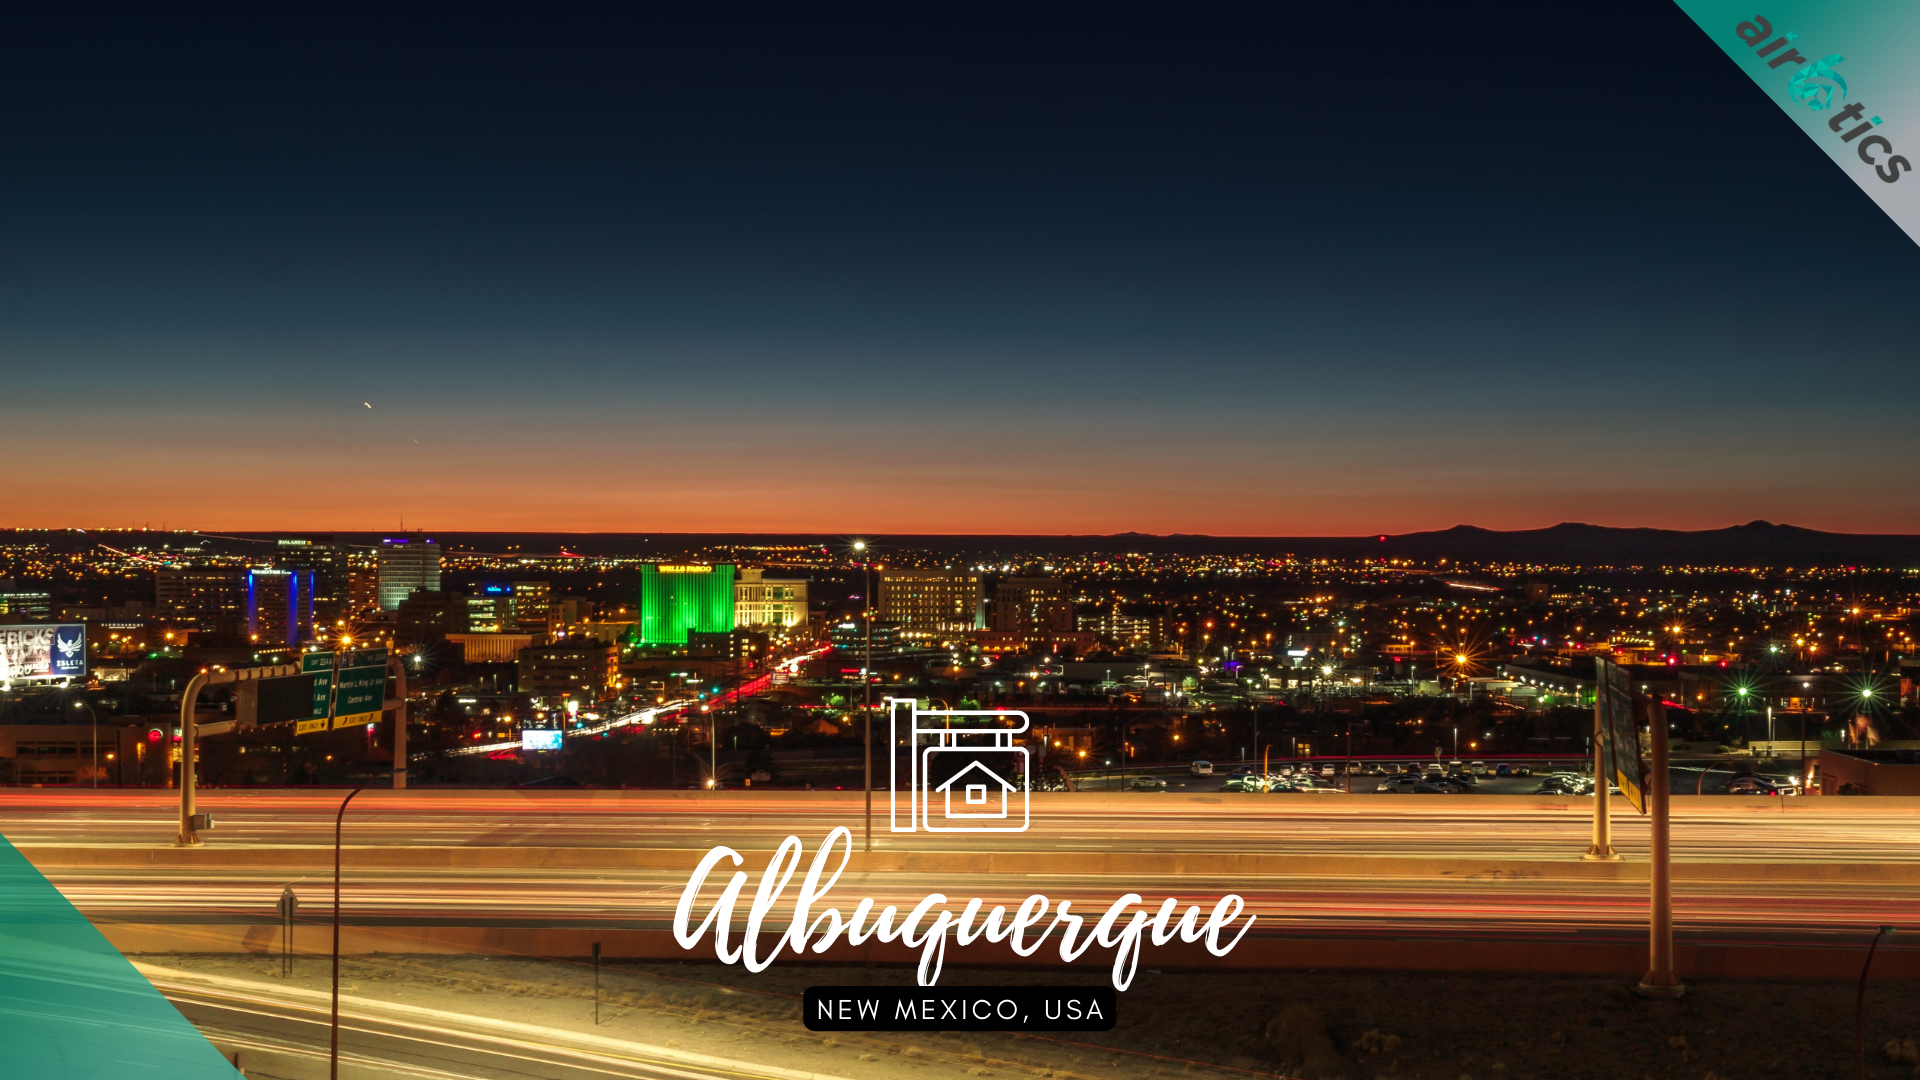 airbnb property investment Albuquerque